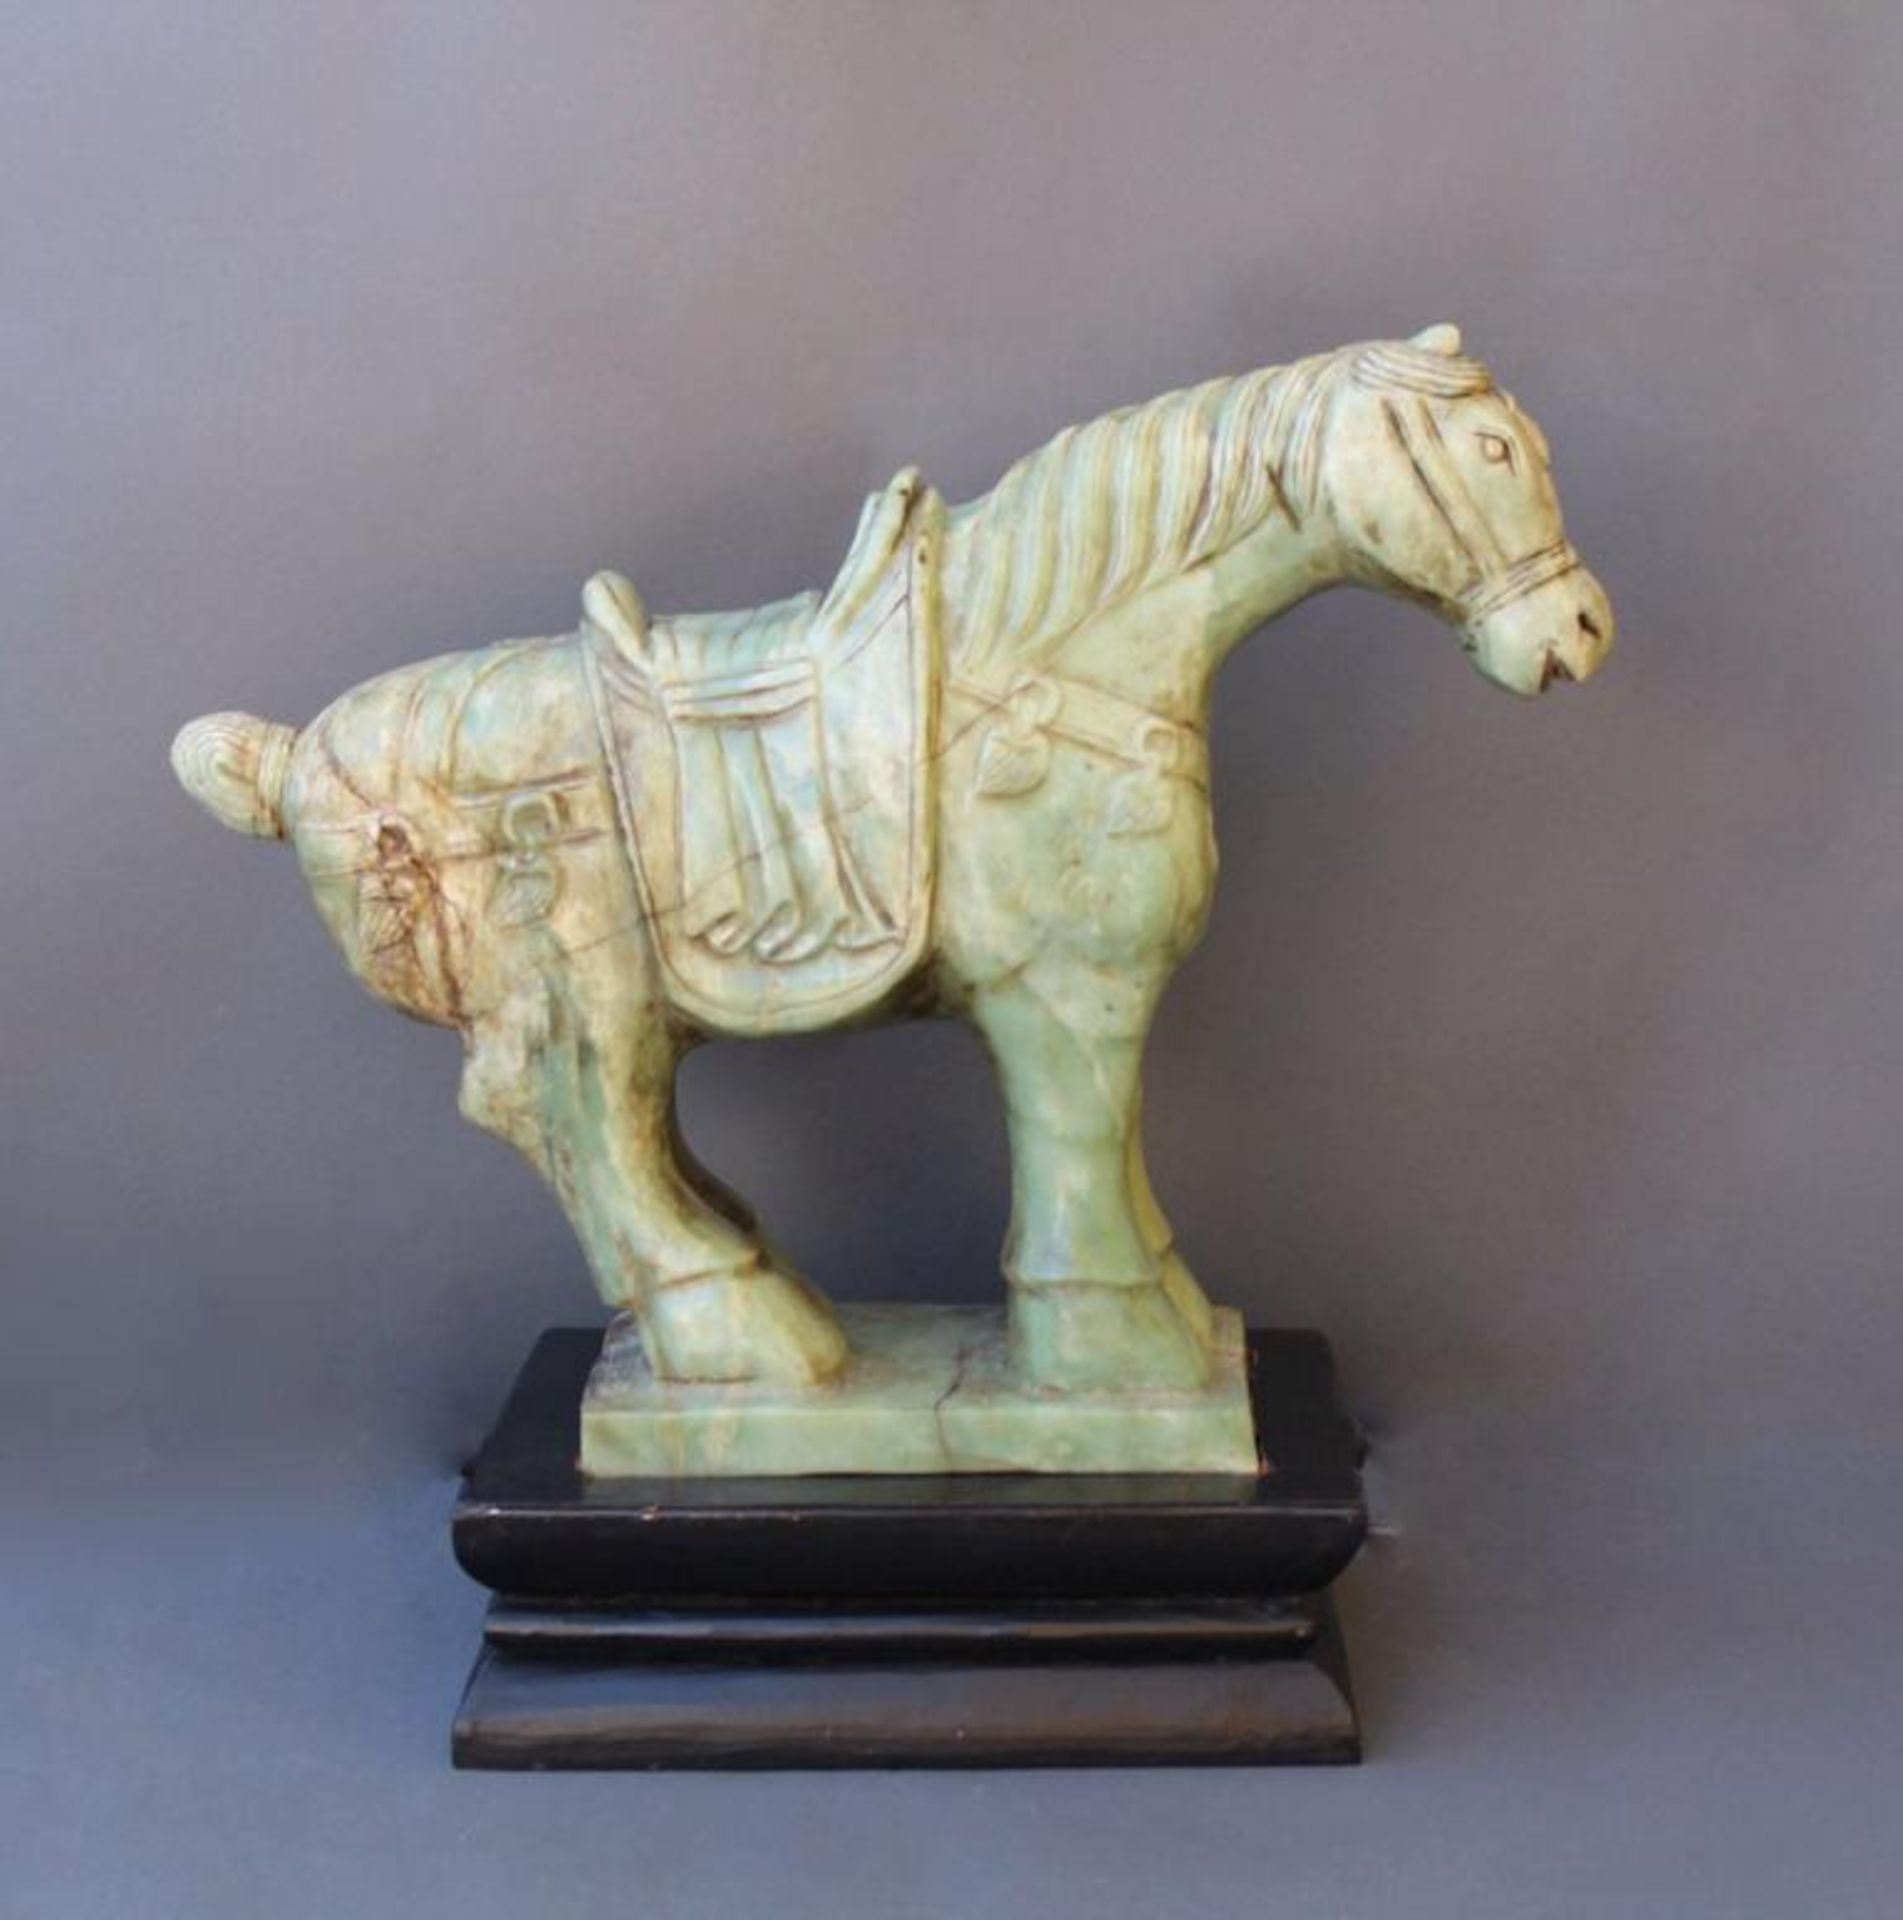 Sehr große Pferdefigur, Serpentin-JadeChina, 20. Jahrhundert, vollplastisch gearbeitetes Pferd mit - Bild 2 aus 4